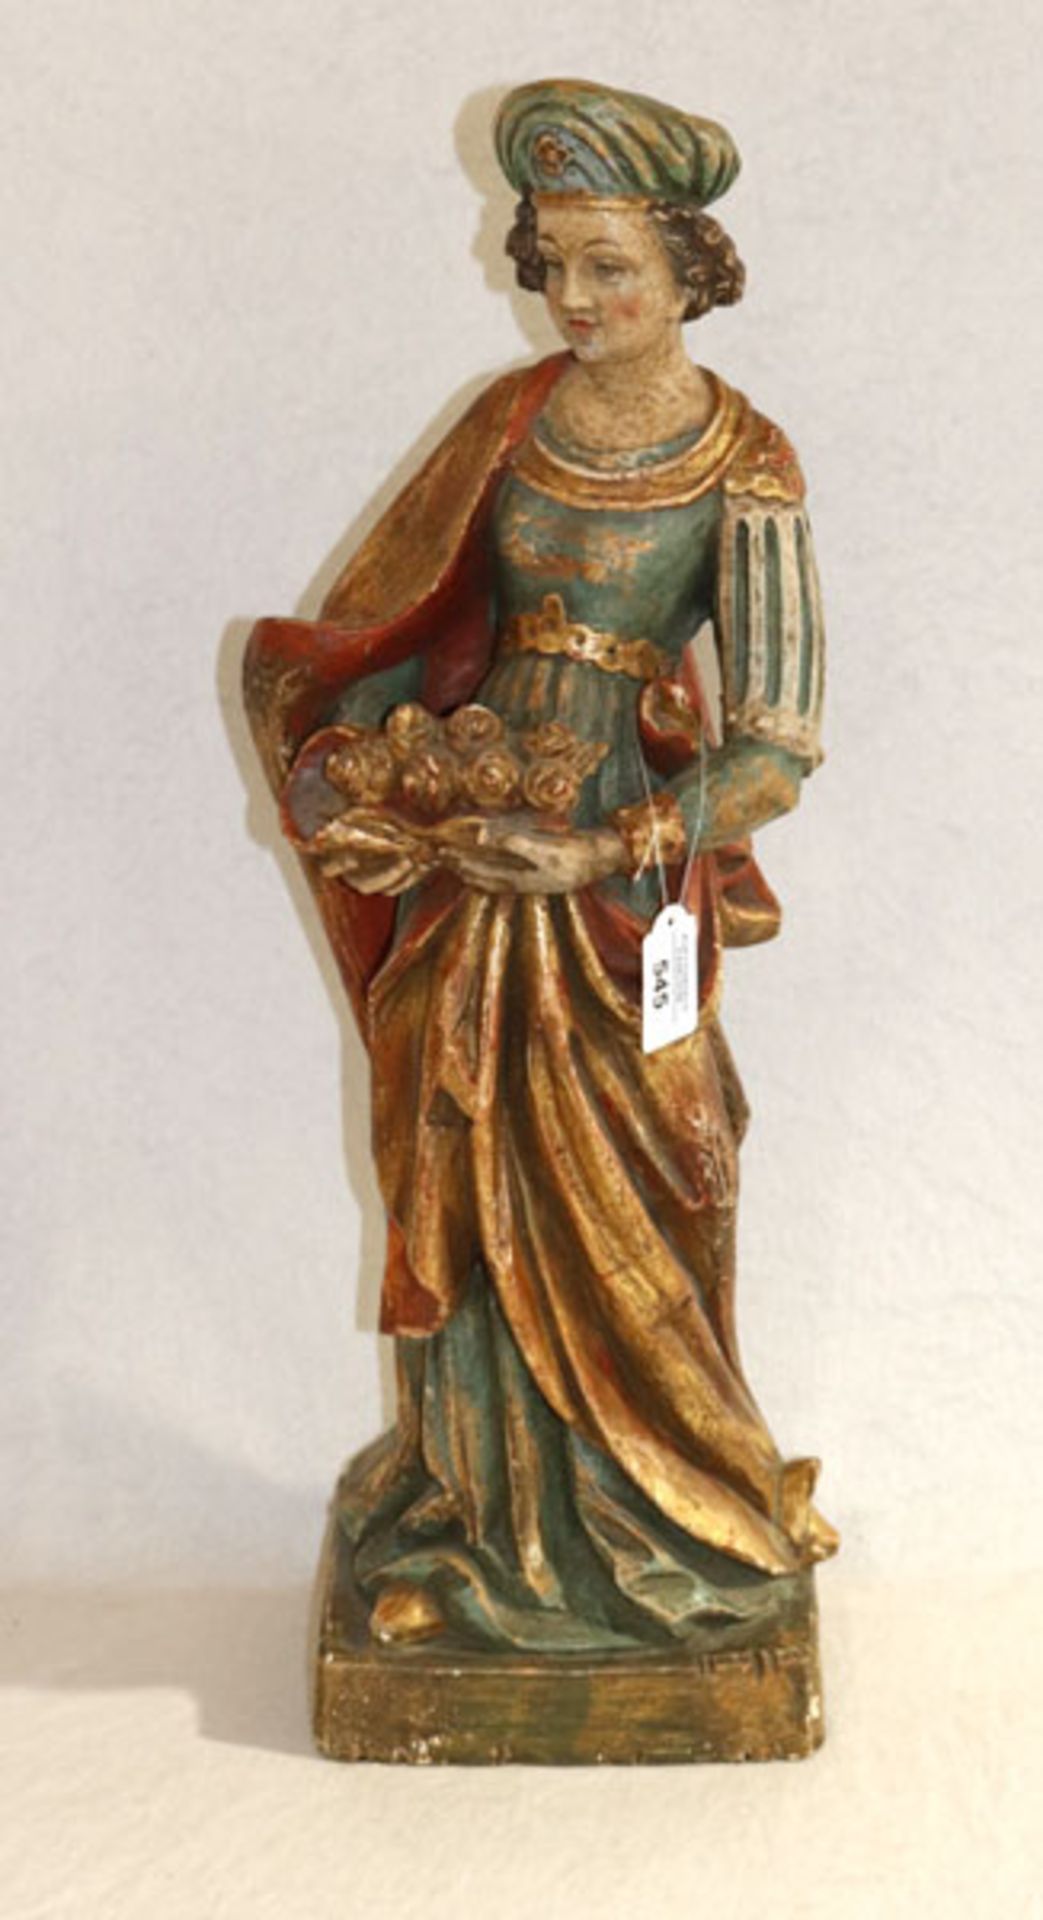 Holz Figurenskulptur 'Heilige Elisabeth', farbig gefaßt, H 62 cm, bestossen und berieben